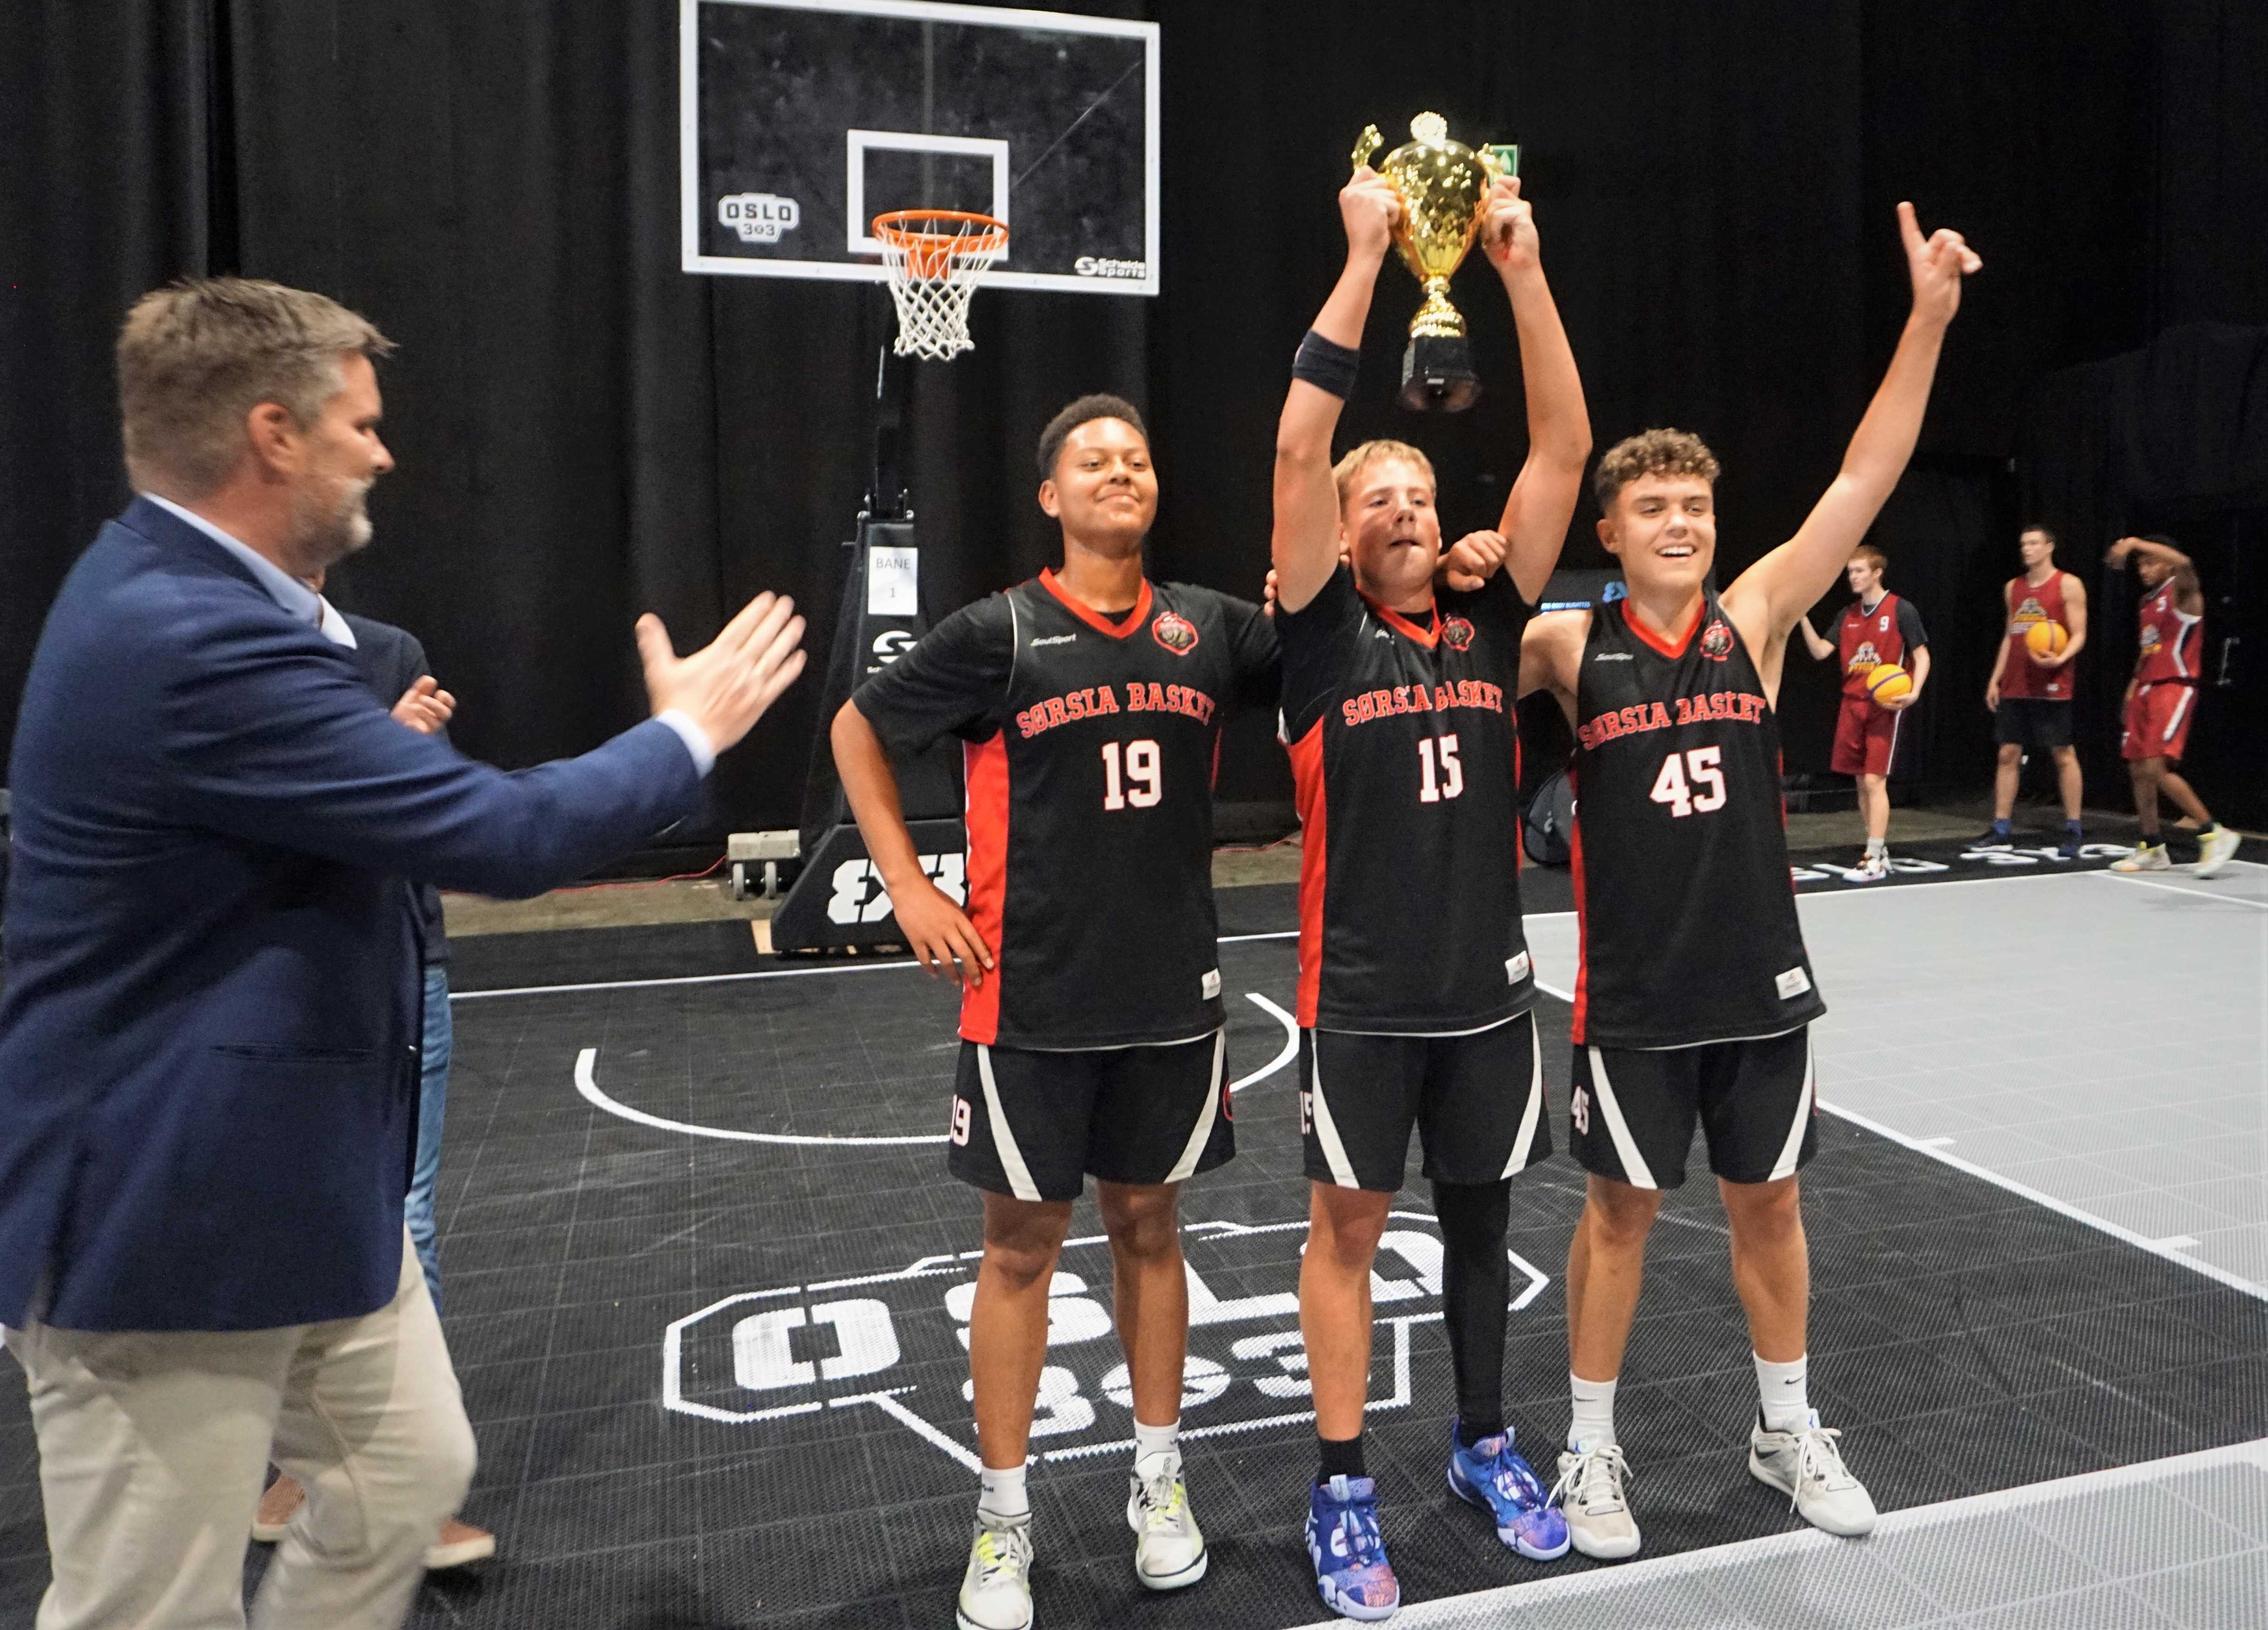 Sørsias U15-gutter har fått vinnerpokalen av basketballpresident Jan Hendrik Parmann og kan kalle seg norgesmestre i 3x3-basket. Fra venstre Kevin Leraand, Rokas Pocius og Matas Hoff.
FOTO: ARILD SANDVEN 